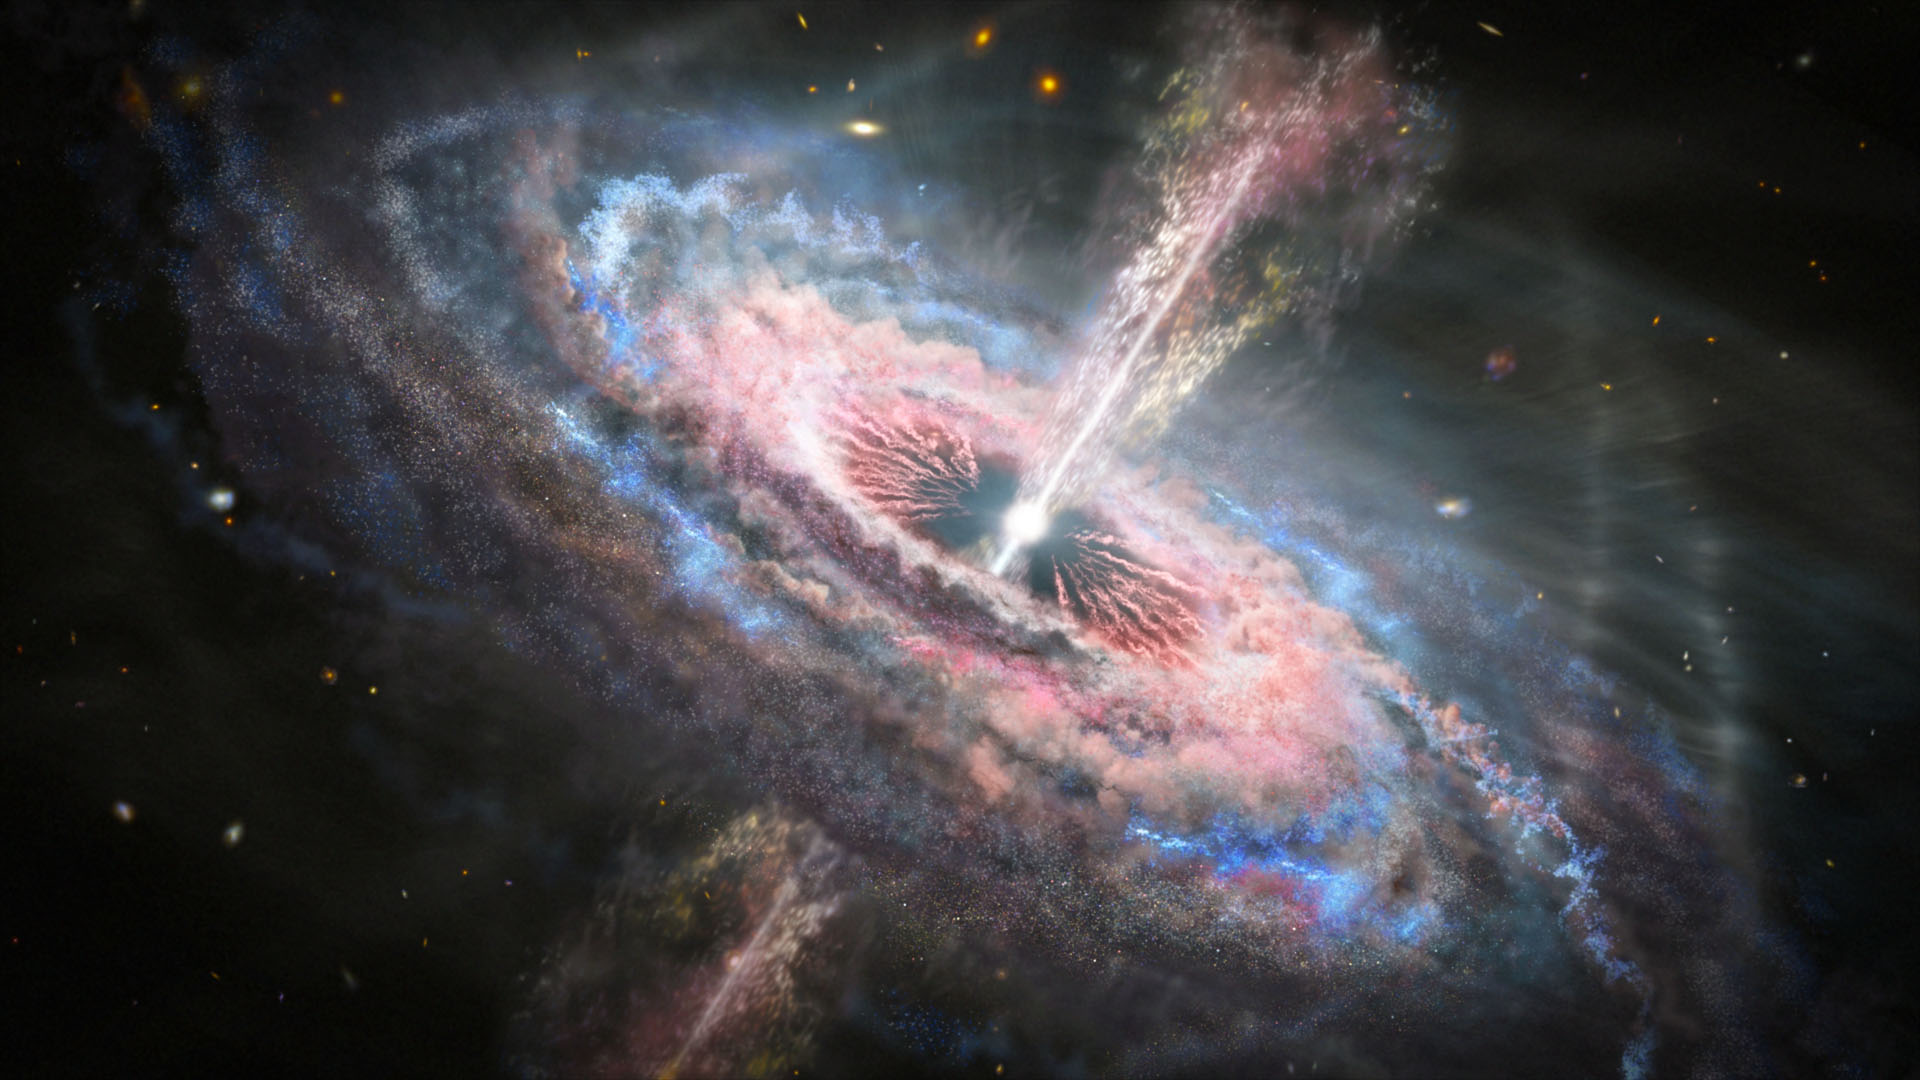 Ilustrácia galaxie s kvazarom, aktívnou, jasnou a vzdialenou supermasívnou čiernou dierou v jej srdci